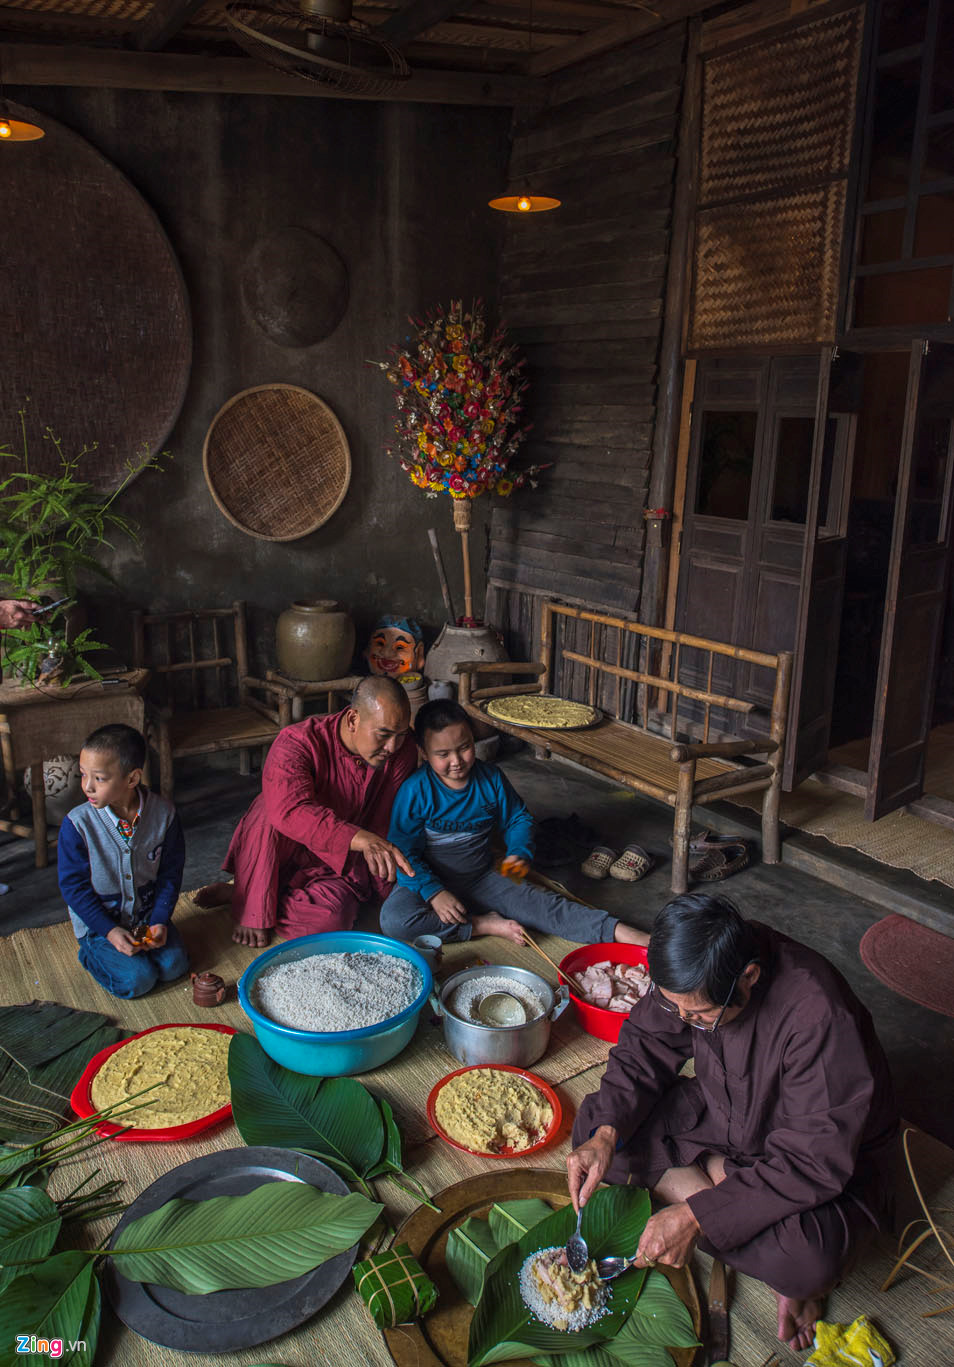 Gói bánh chưng ngày Tết, nét văn hóa lâu đời còn gìn giữ ở Huế (05/02/2019)